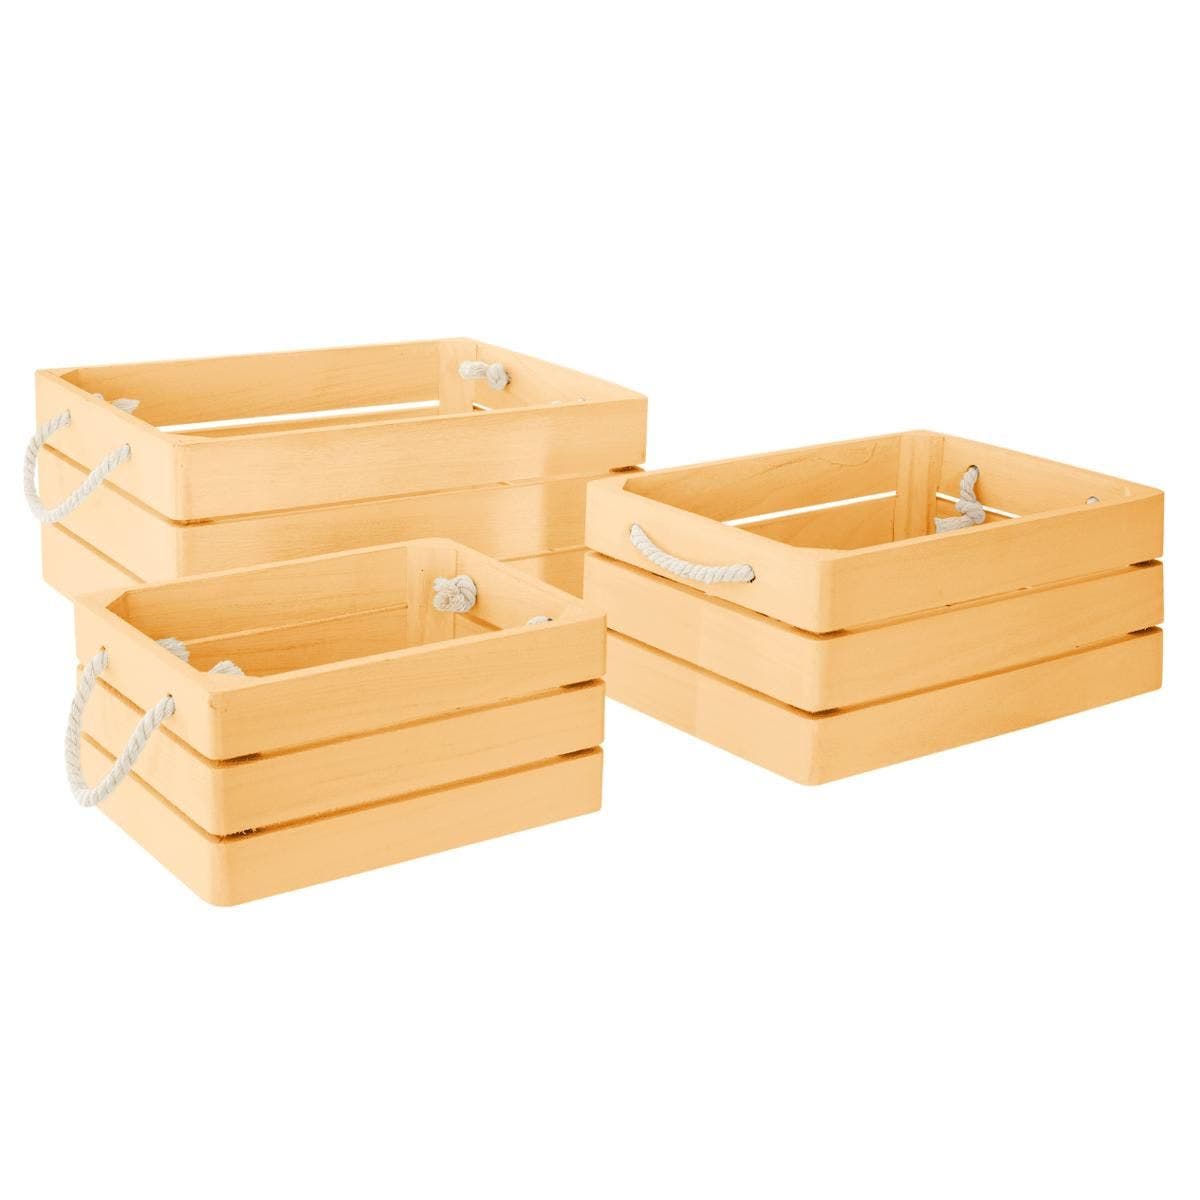 Caja de madera maciza y color amarillo - Oma Home